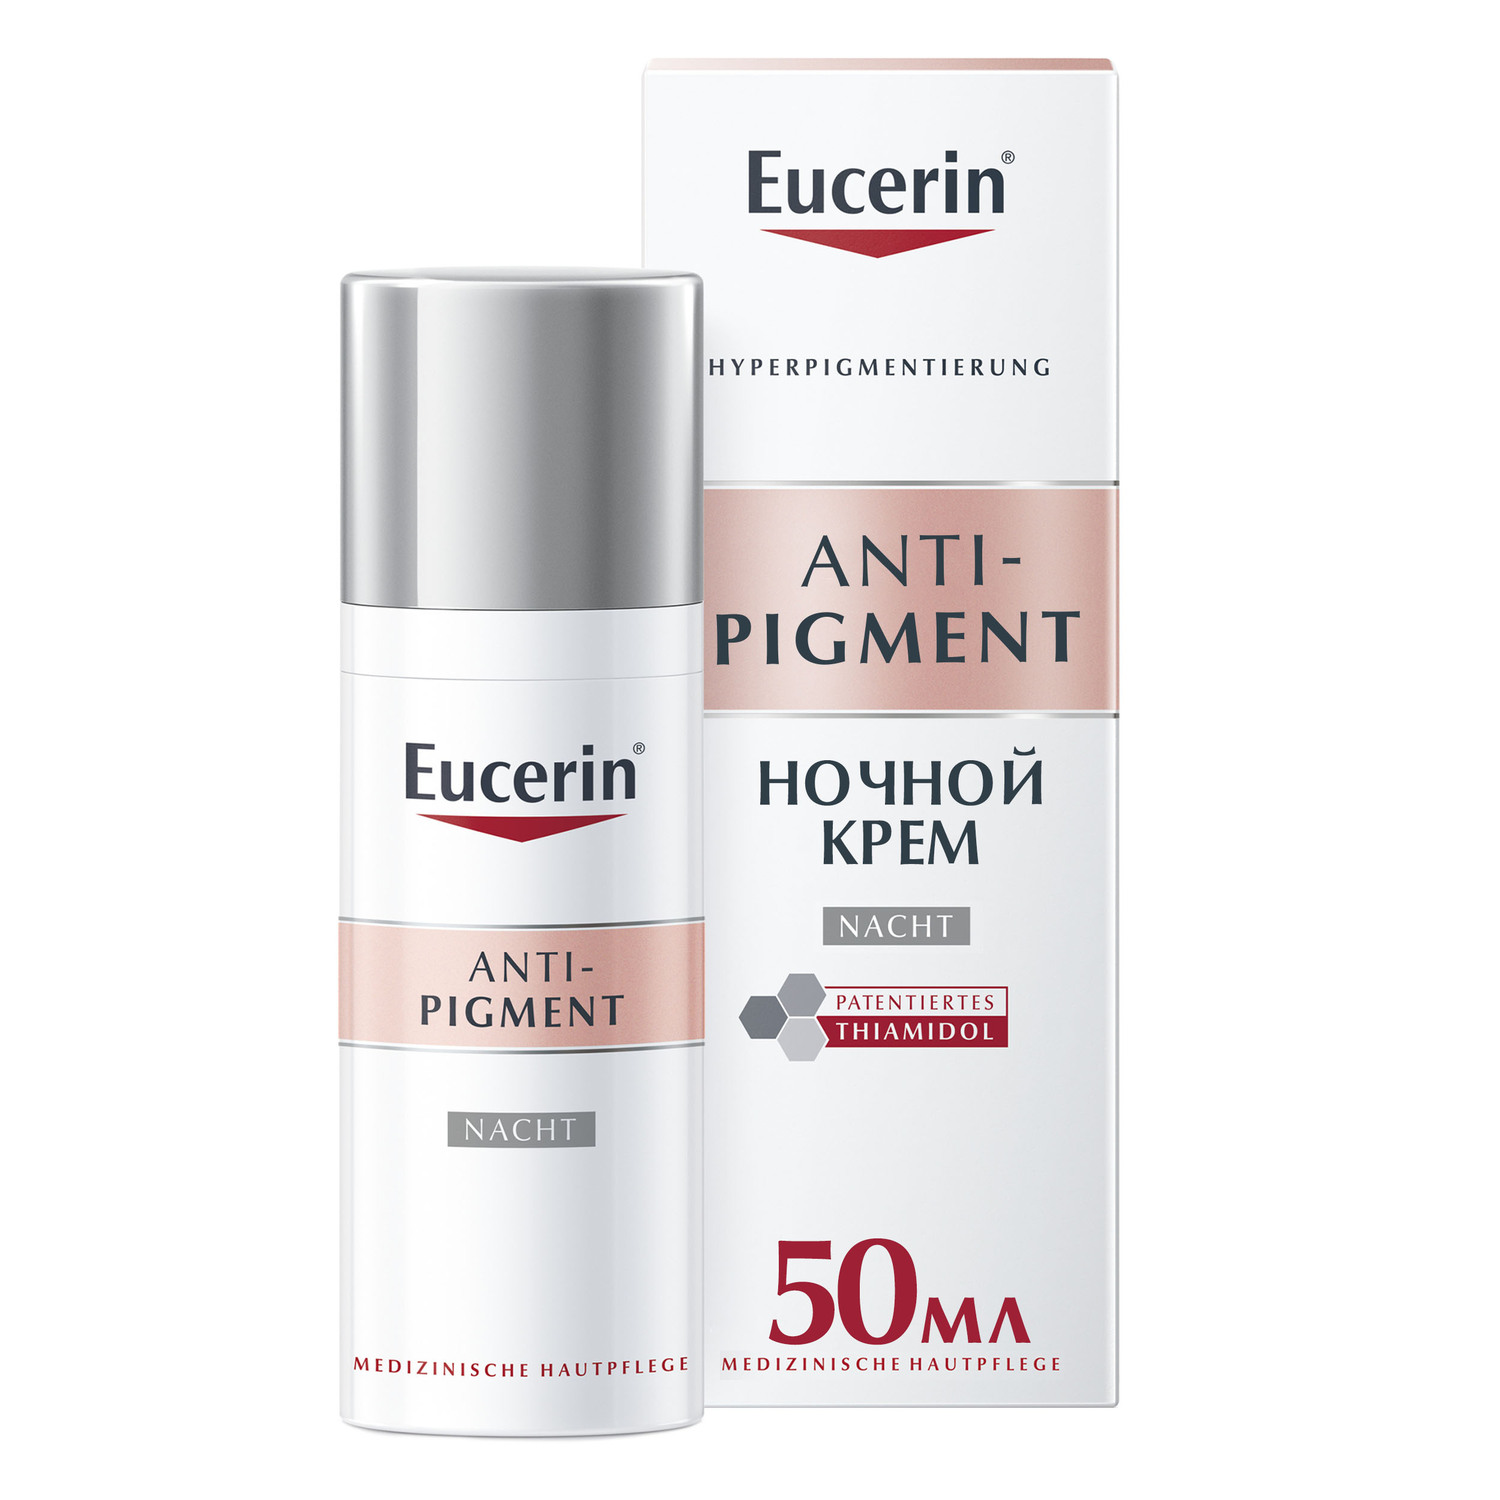 Eucerin Ночной крем против пигментации, 50 мл (Eucerin, Anti